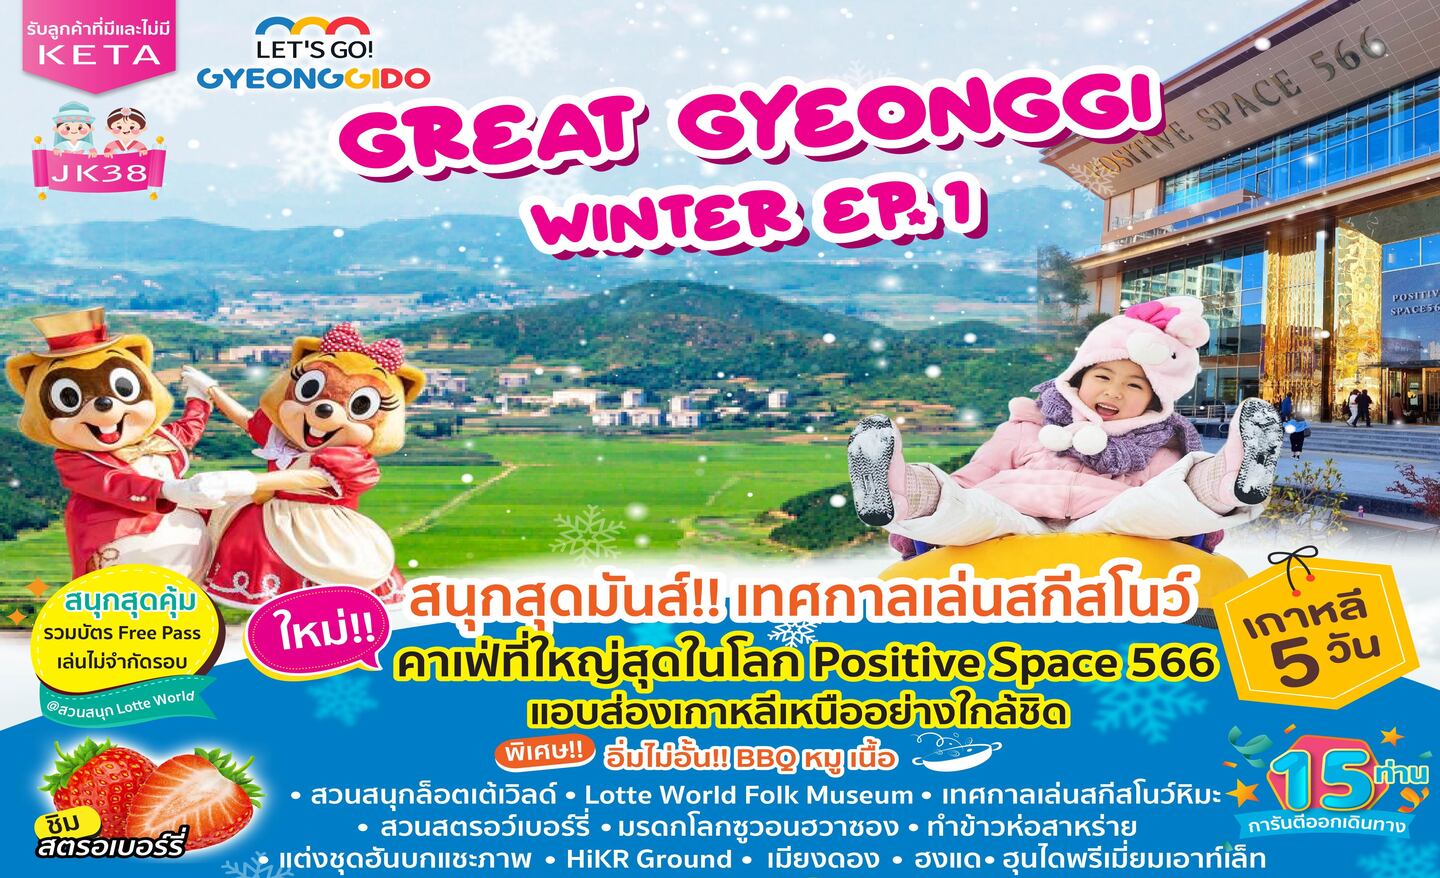 ทัวร์เกาหลี Great Gyeonggi Winter EP.1(ธ.ค.66-มี.ค.67)